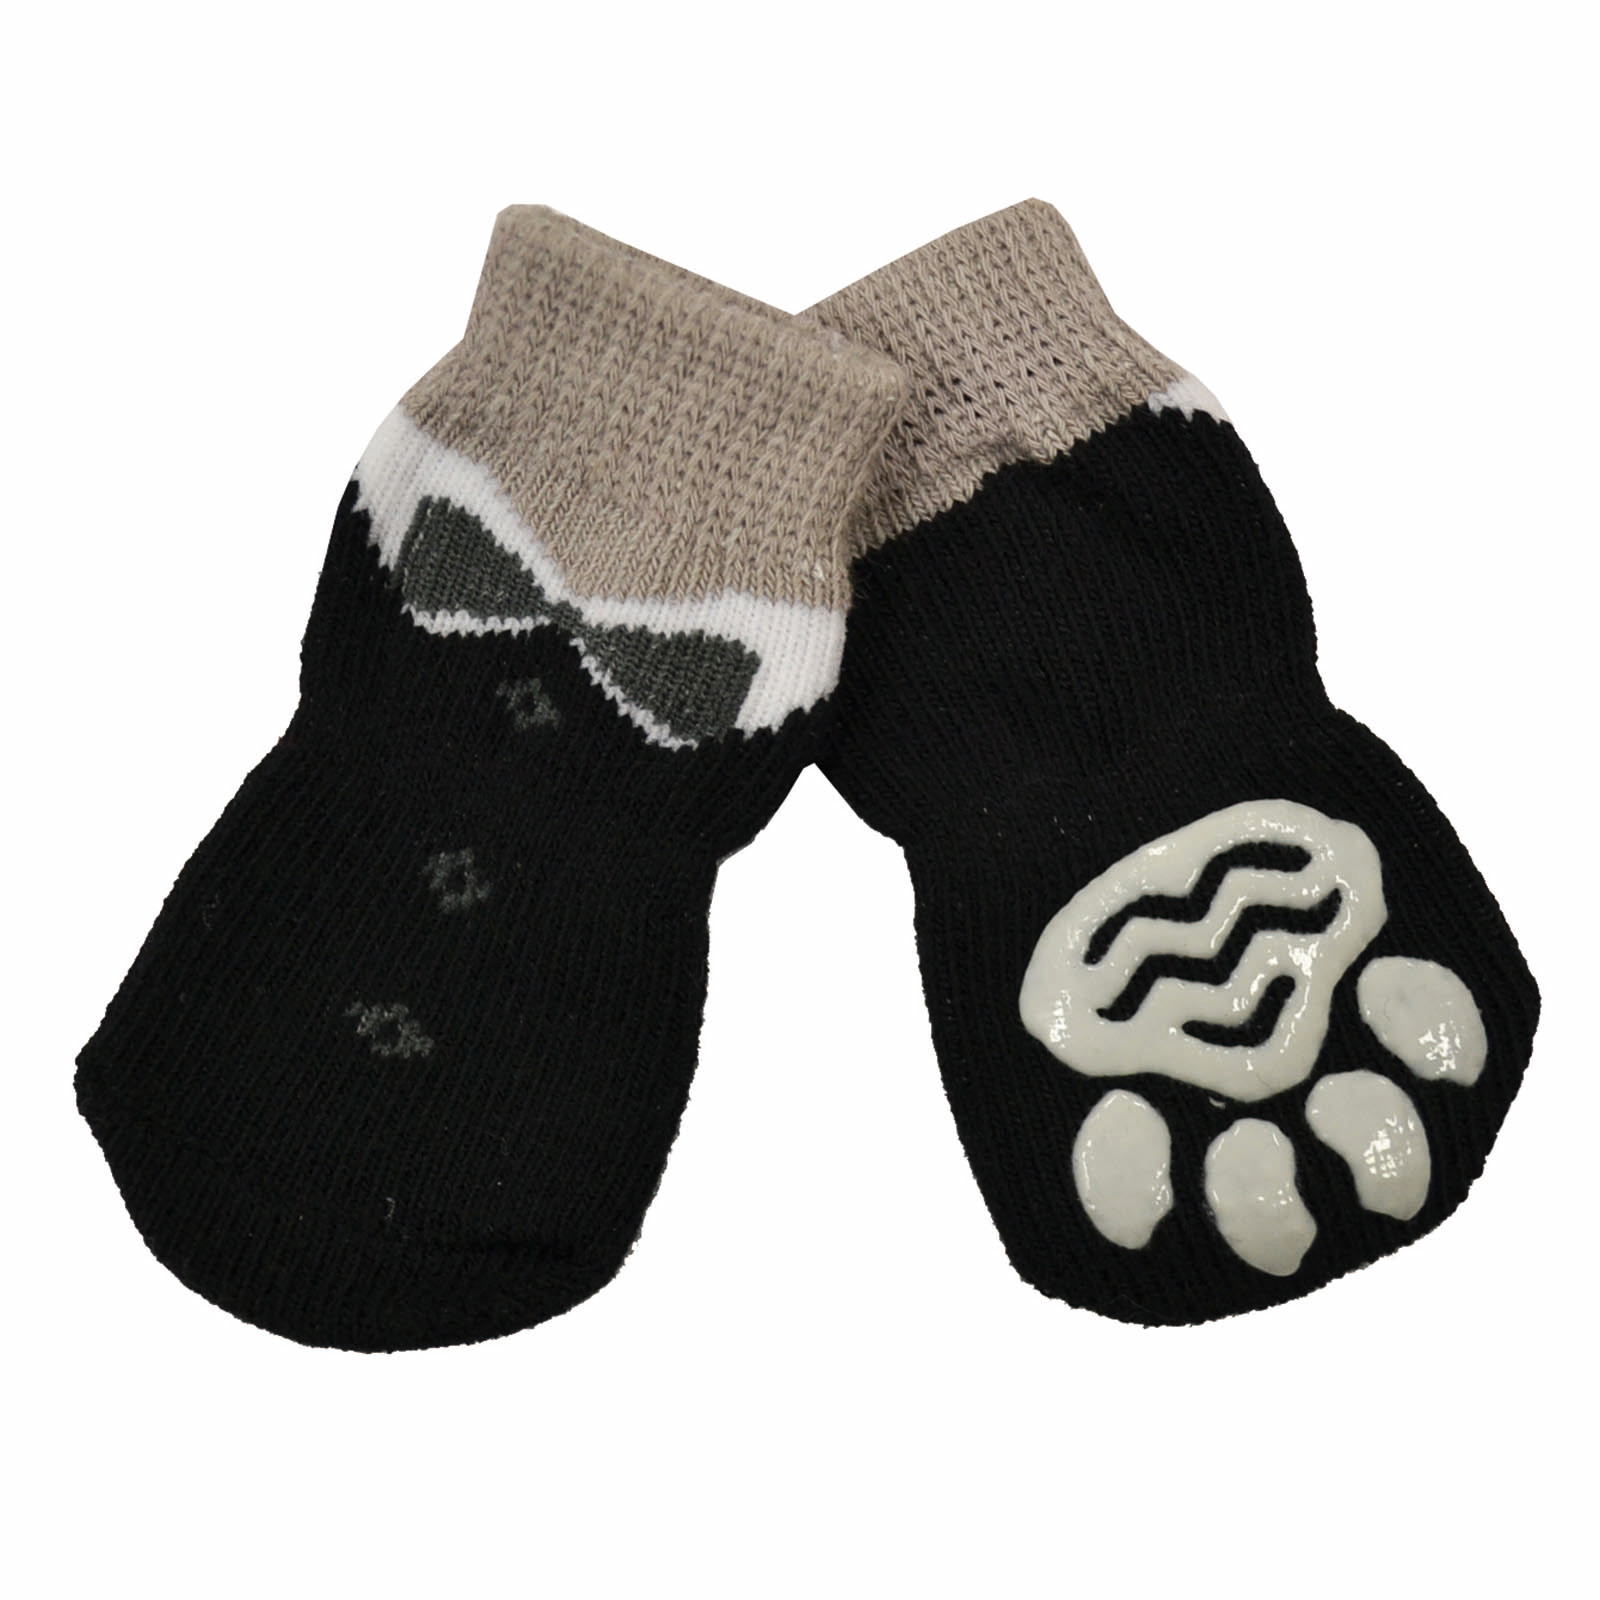 Zeez Non Slip Knitted Pet Socks Black Tuxedo Large For Dogs - $6.99